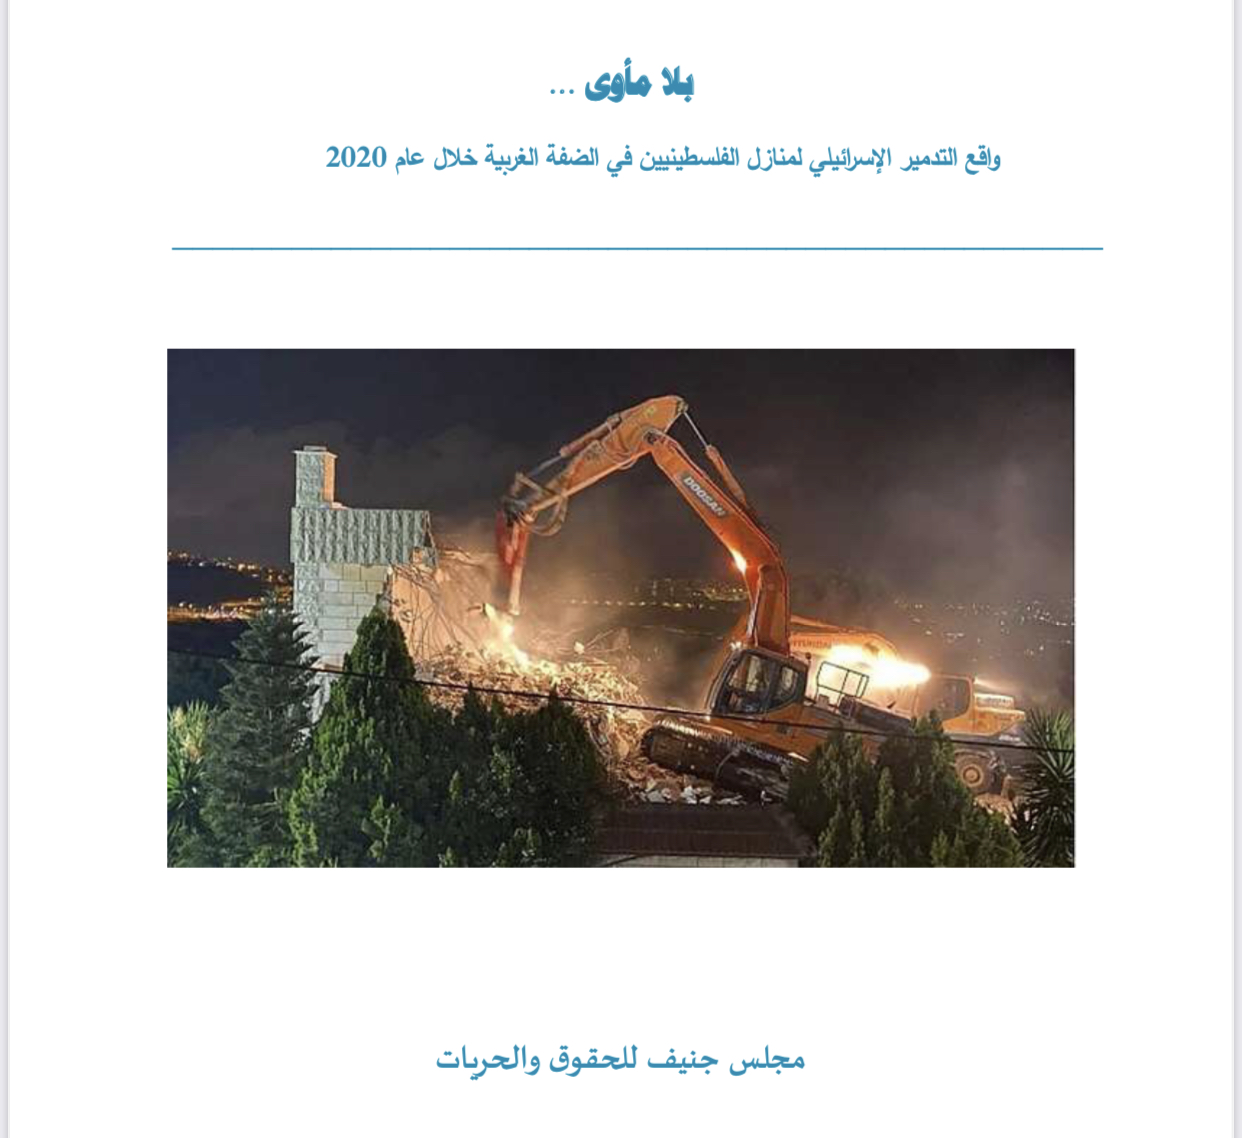 ”بلا مأوى.. تقرير يرصد تدمير الاحتلال منازل الفلسطينيين في 2020